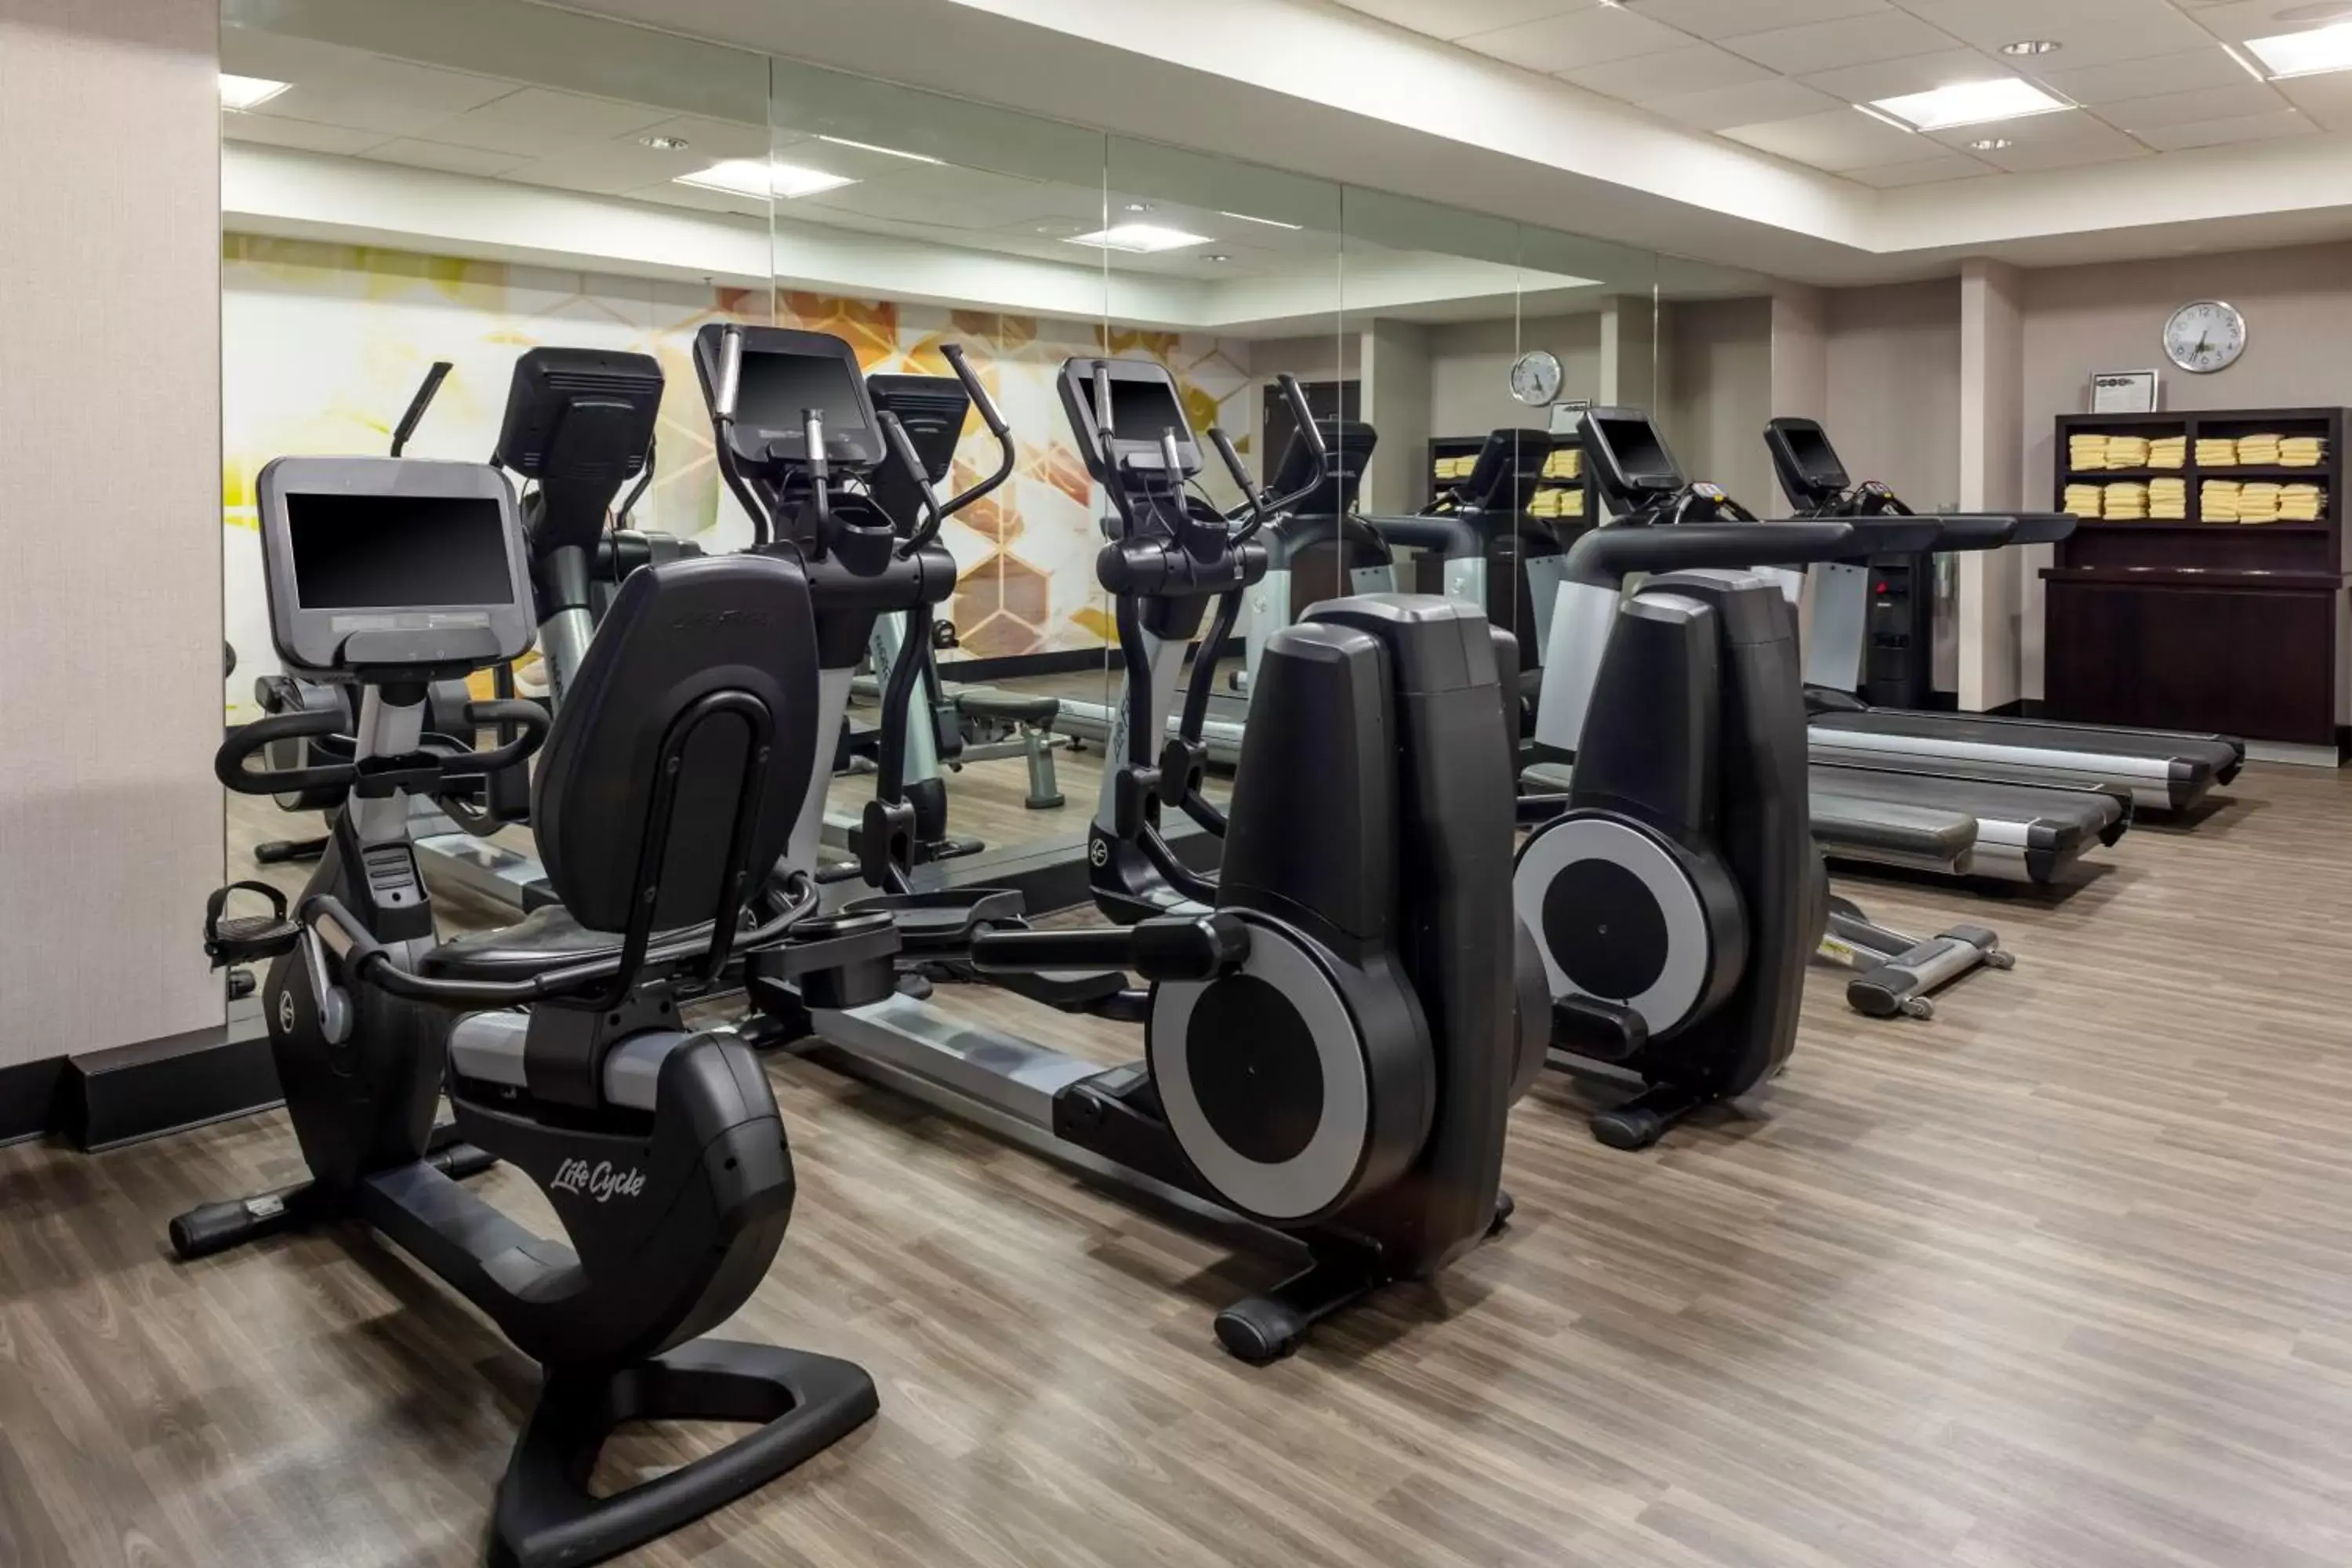 Fitness centre/facilities, Fitness Center/Facilities in Hyatt Place-Dallas/Arlington